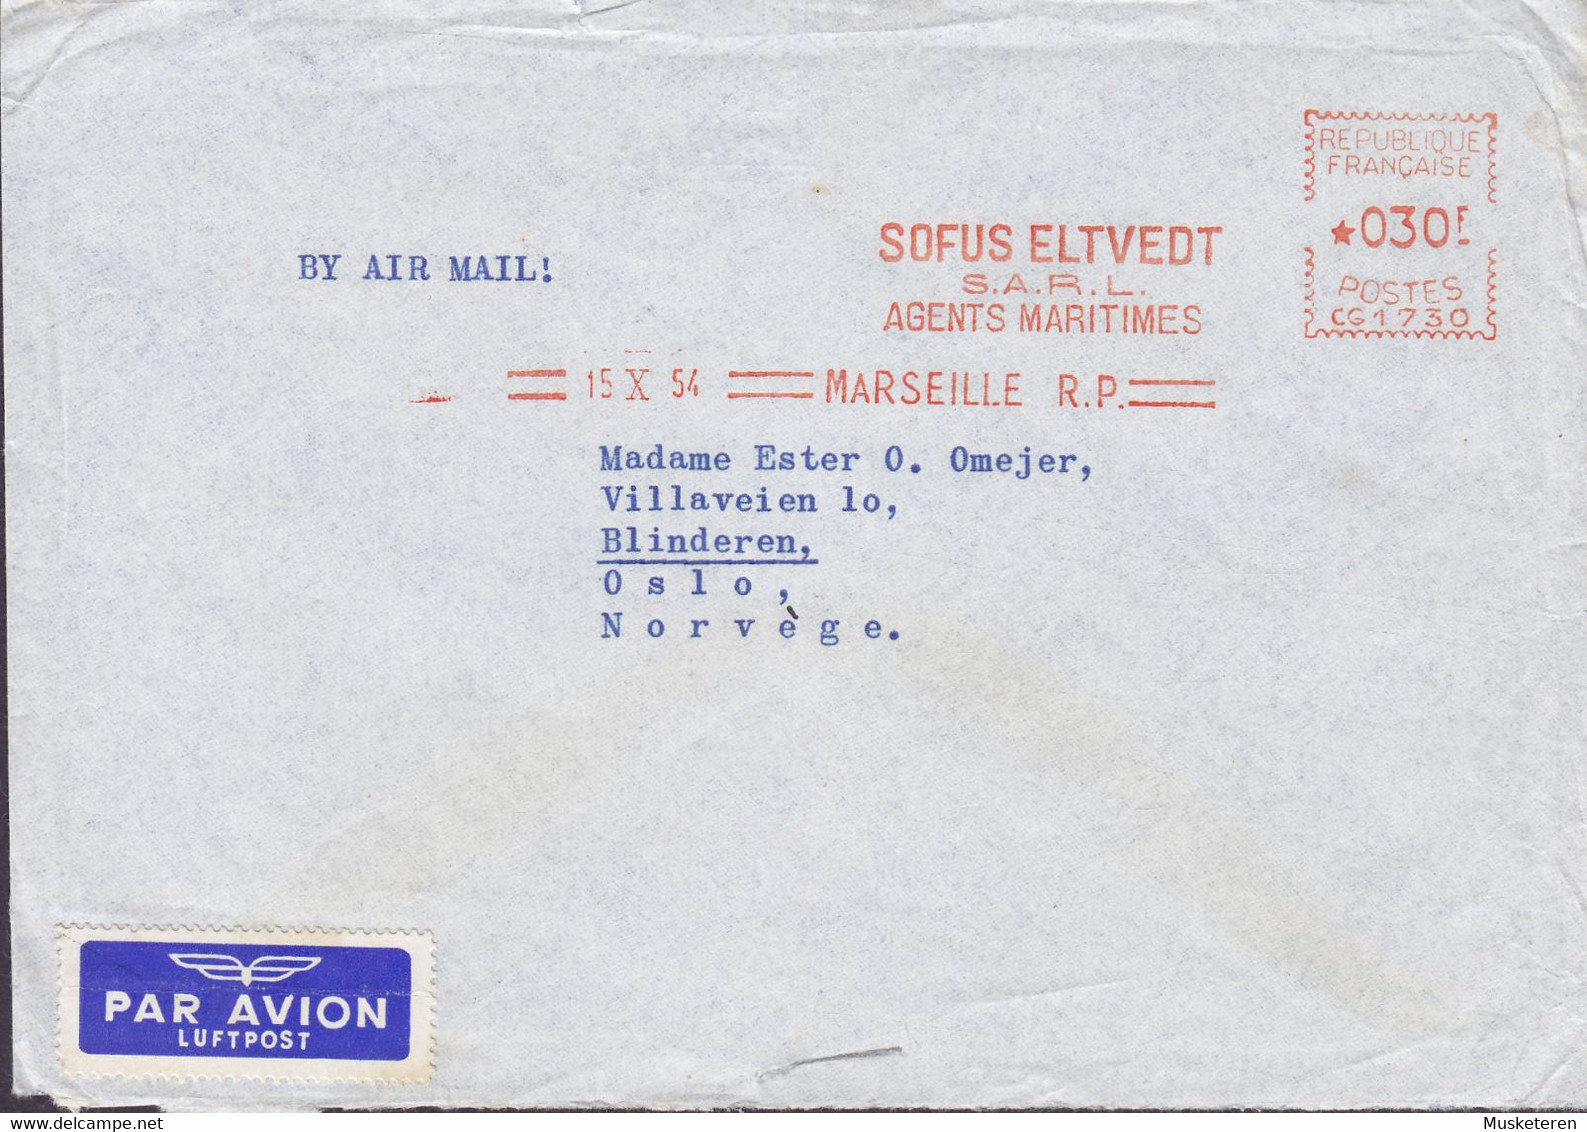 Ships Mail M/S 'FERNFIORD' PAR AVION Label SOFUS ELTVEDT Agents Maritimes, MARSEILLE 1954 Meter Cover Lettre OSLO Norway - Brieven En Documenten